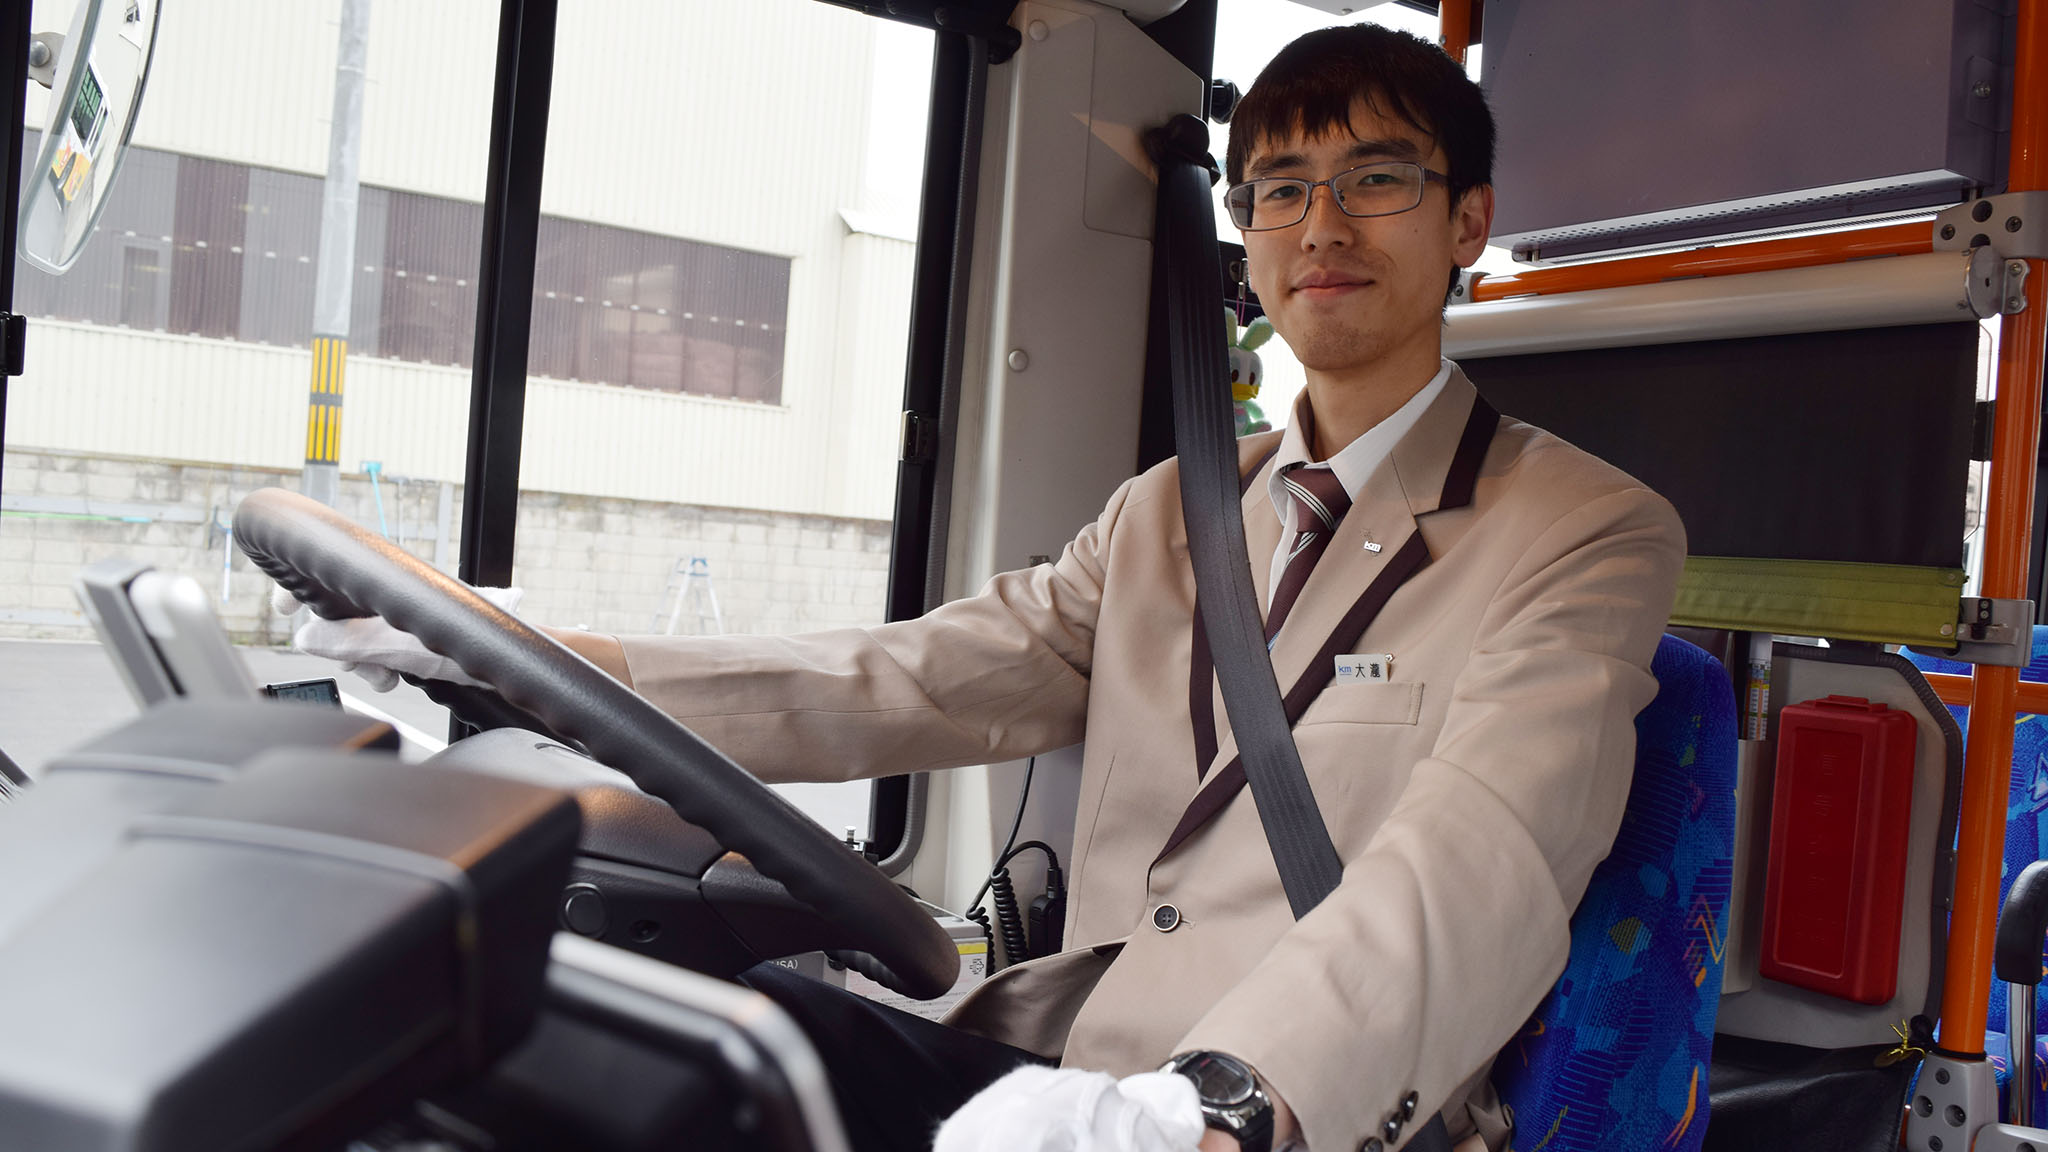 25歳の新人路線バス運転手に聞いたバスの魅力と運転の心得。「愛されるバスにしたいんです」